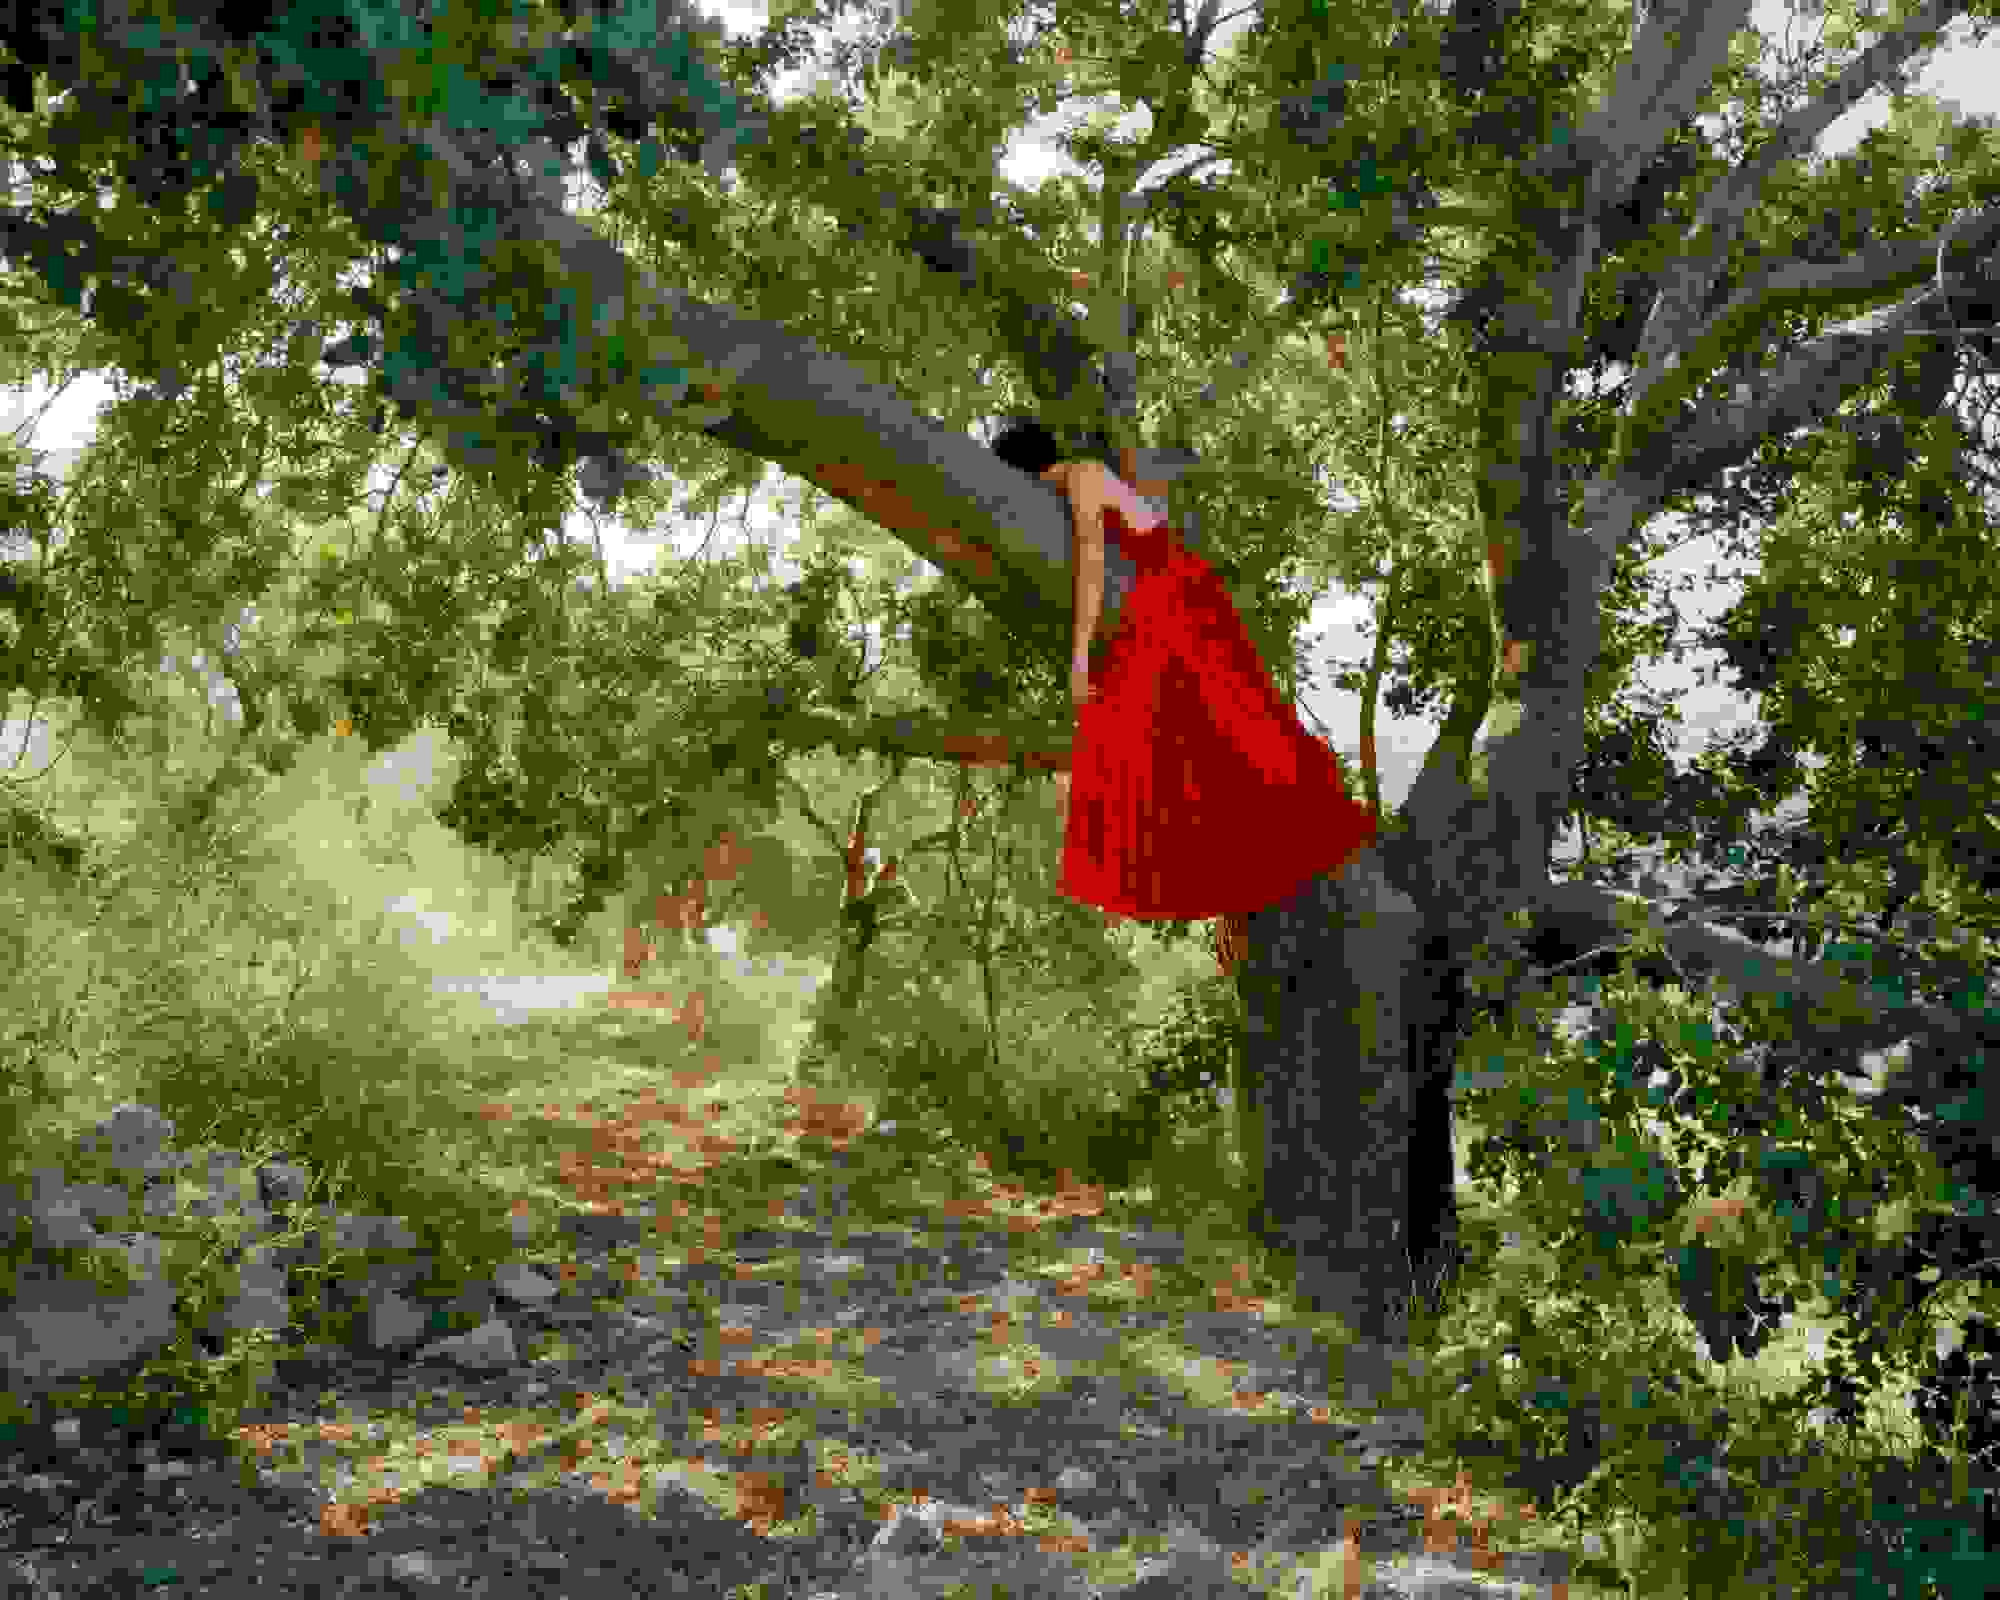 Lara on the tree in her red dress, Koura, Lebanon